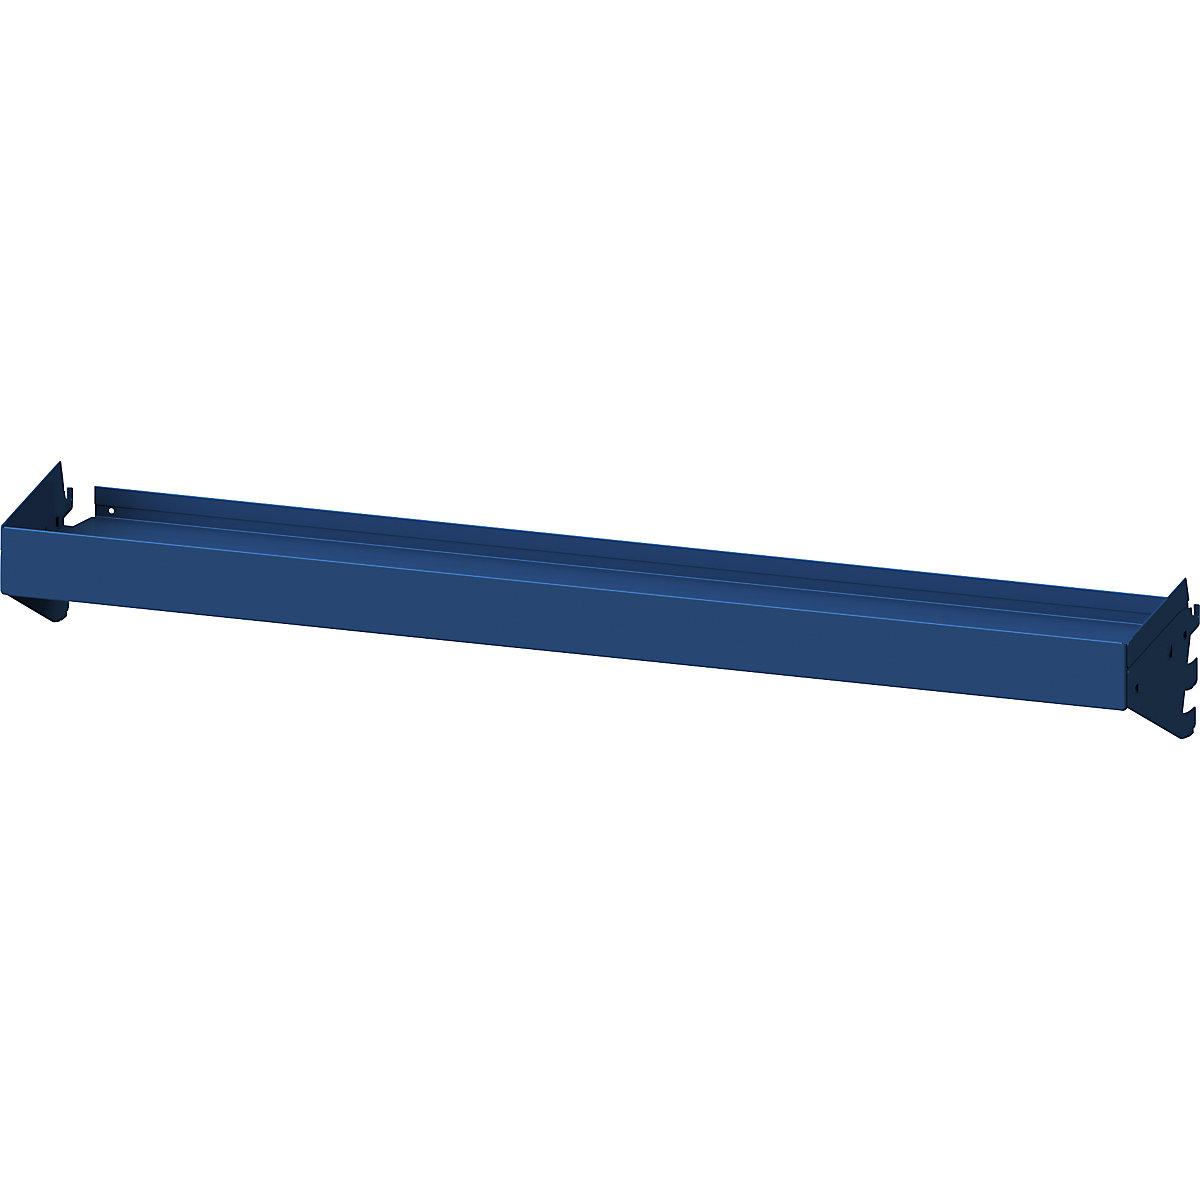 Półka wannowa – ANKE, okrawędziowanie 75 mm, szer. x głęb. 1250 x 250 mm, niebieska-4